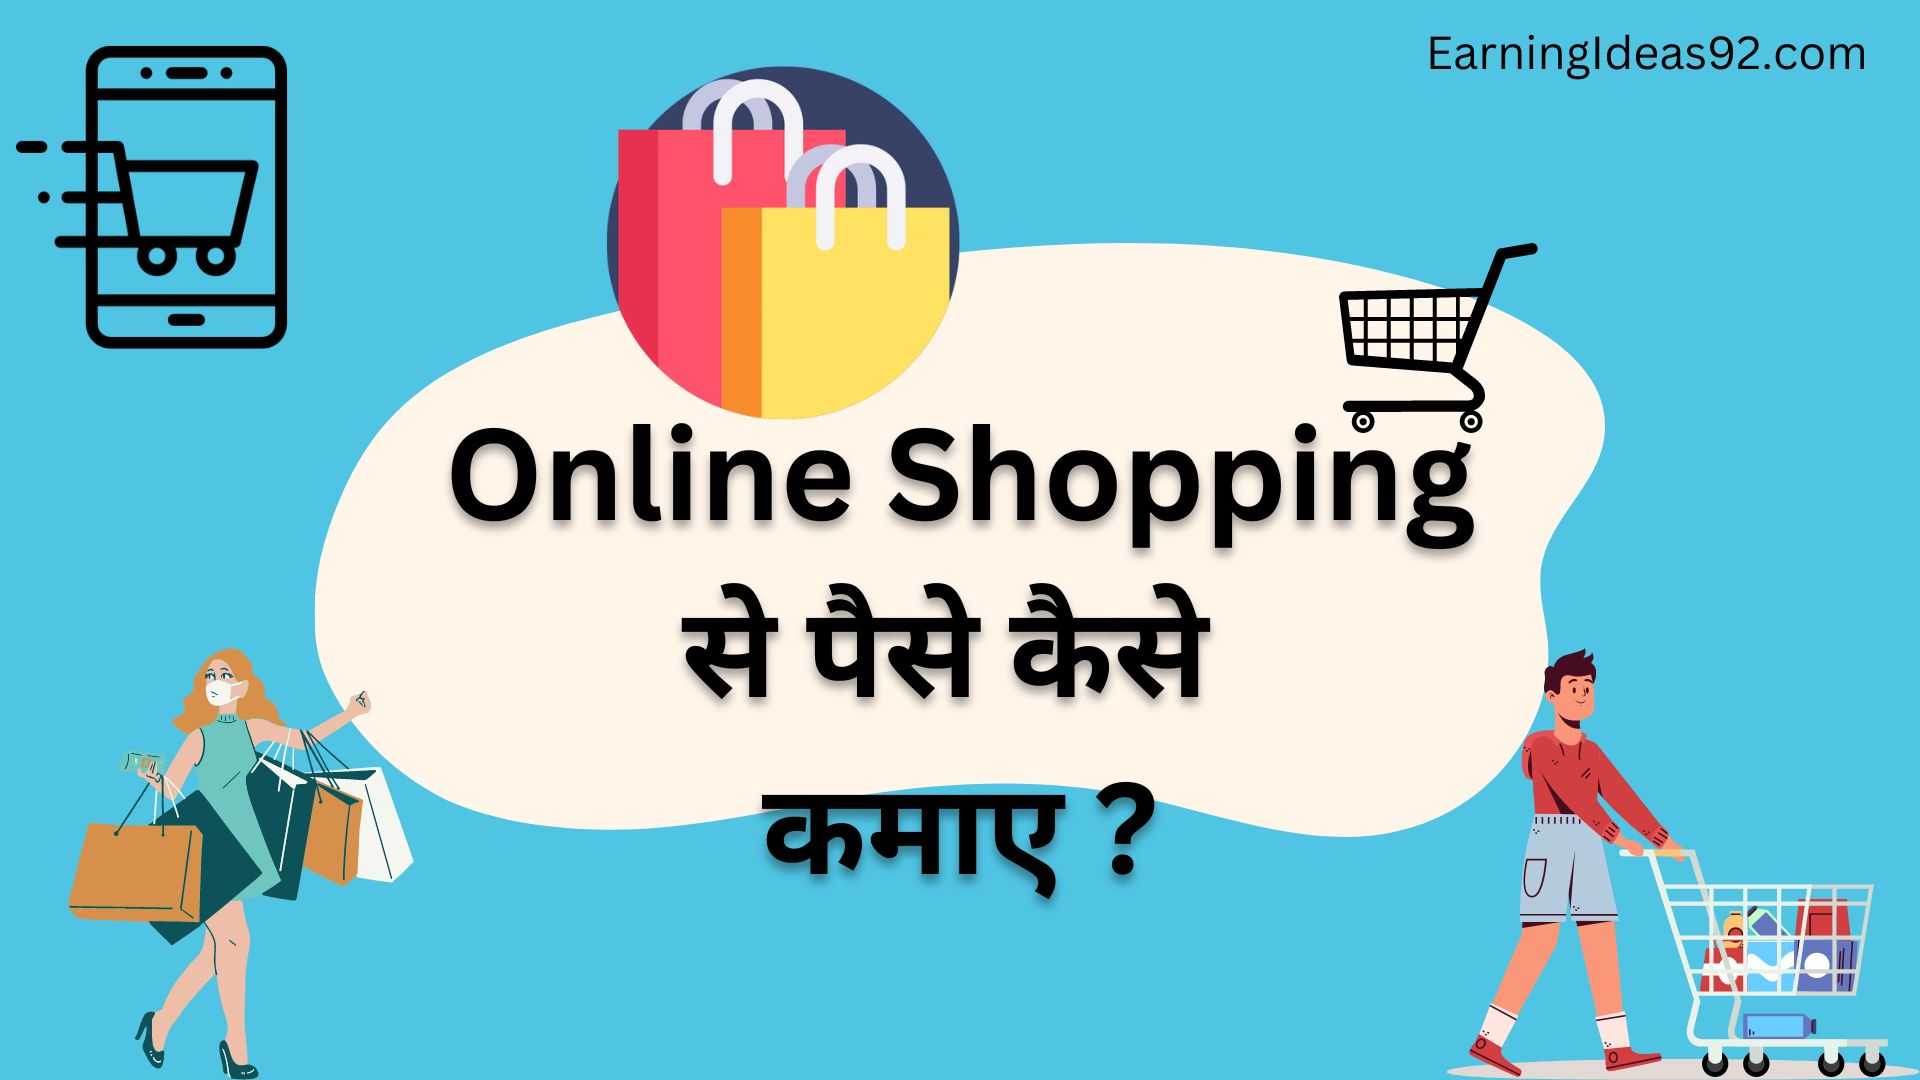 Online Shopping से पैसे कैसे कमाए?